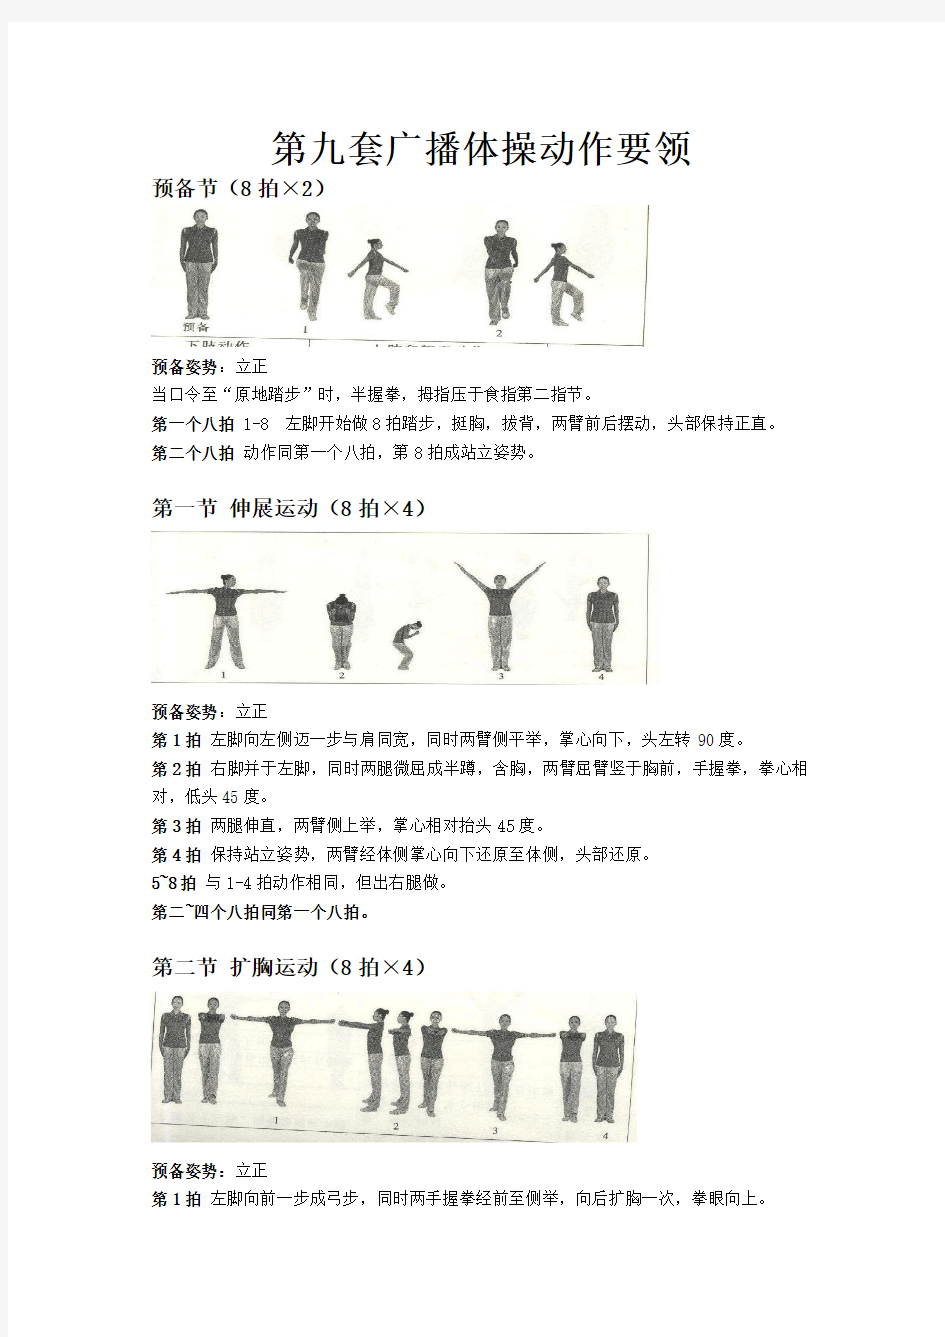 第九套广播体操动作要领(2011年8月8日附带图的校正版)